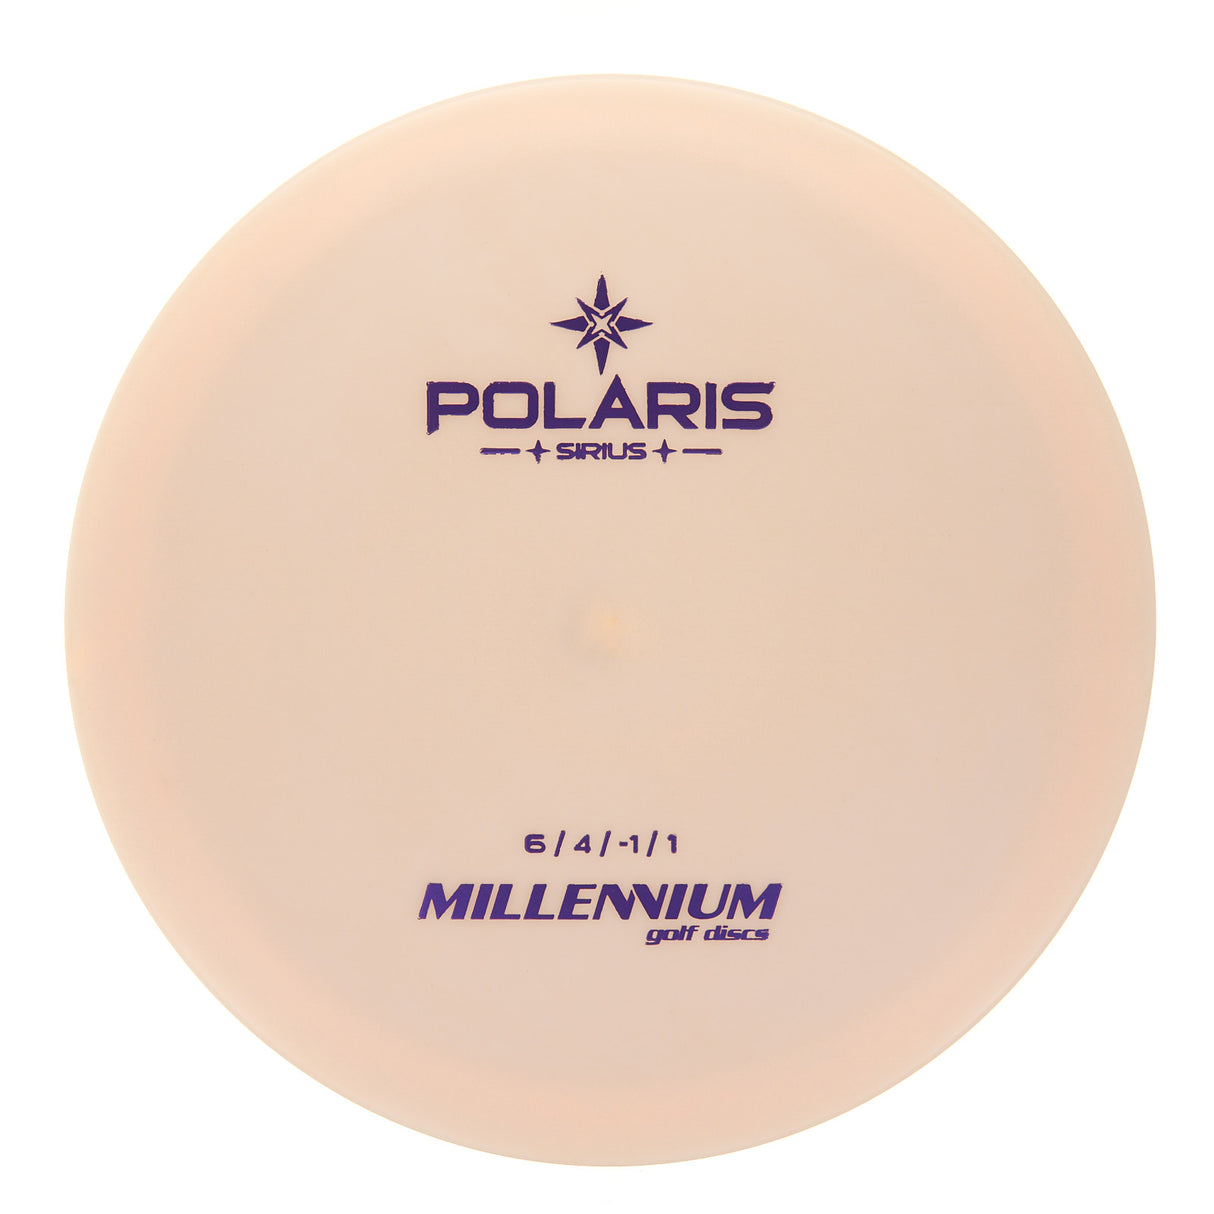 Millennium Polaris LS - Sirius 170g | Style 0002